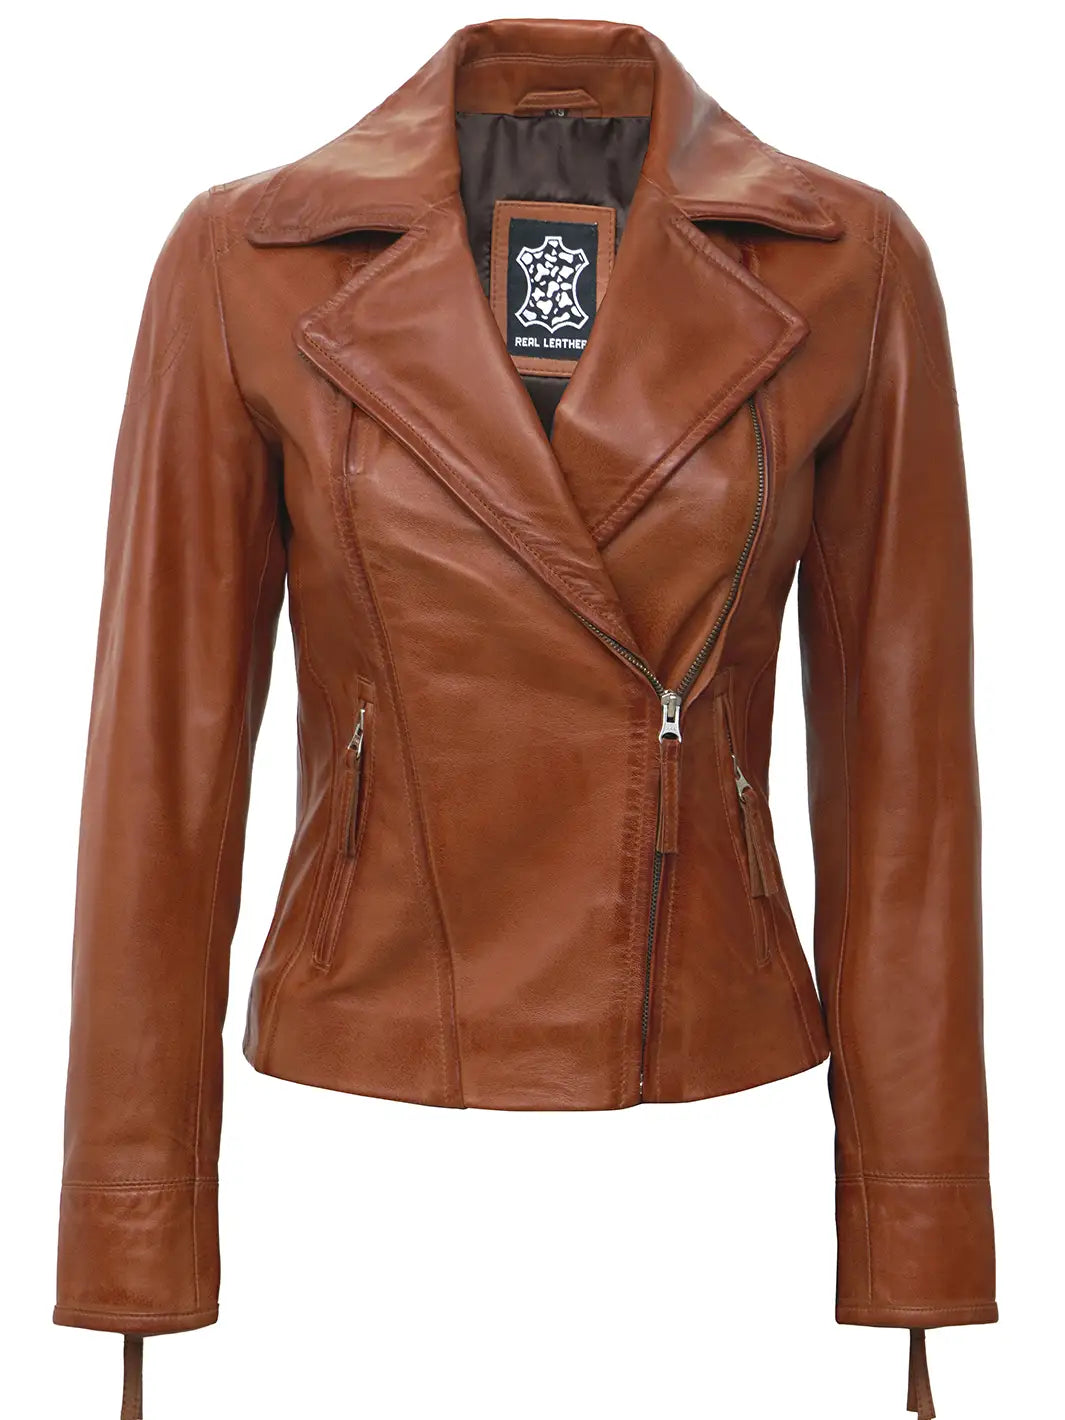 Women tan biker leather jacket